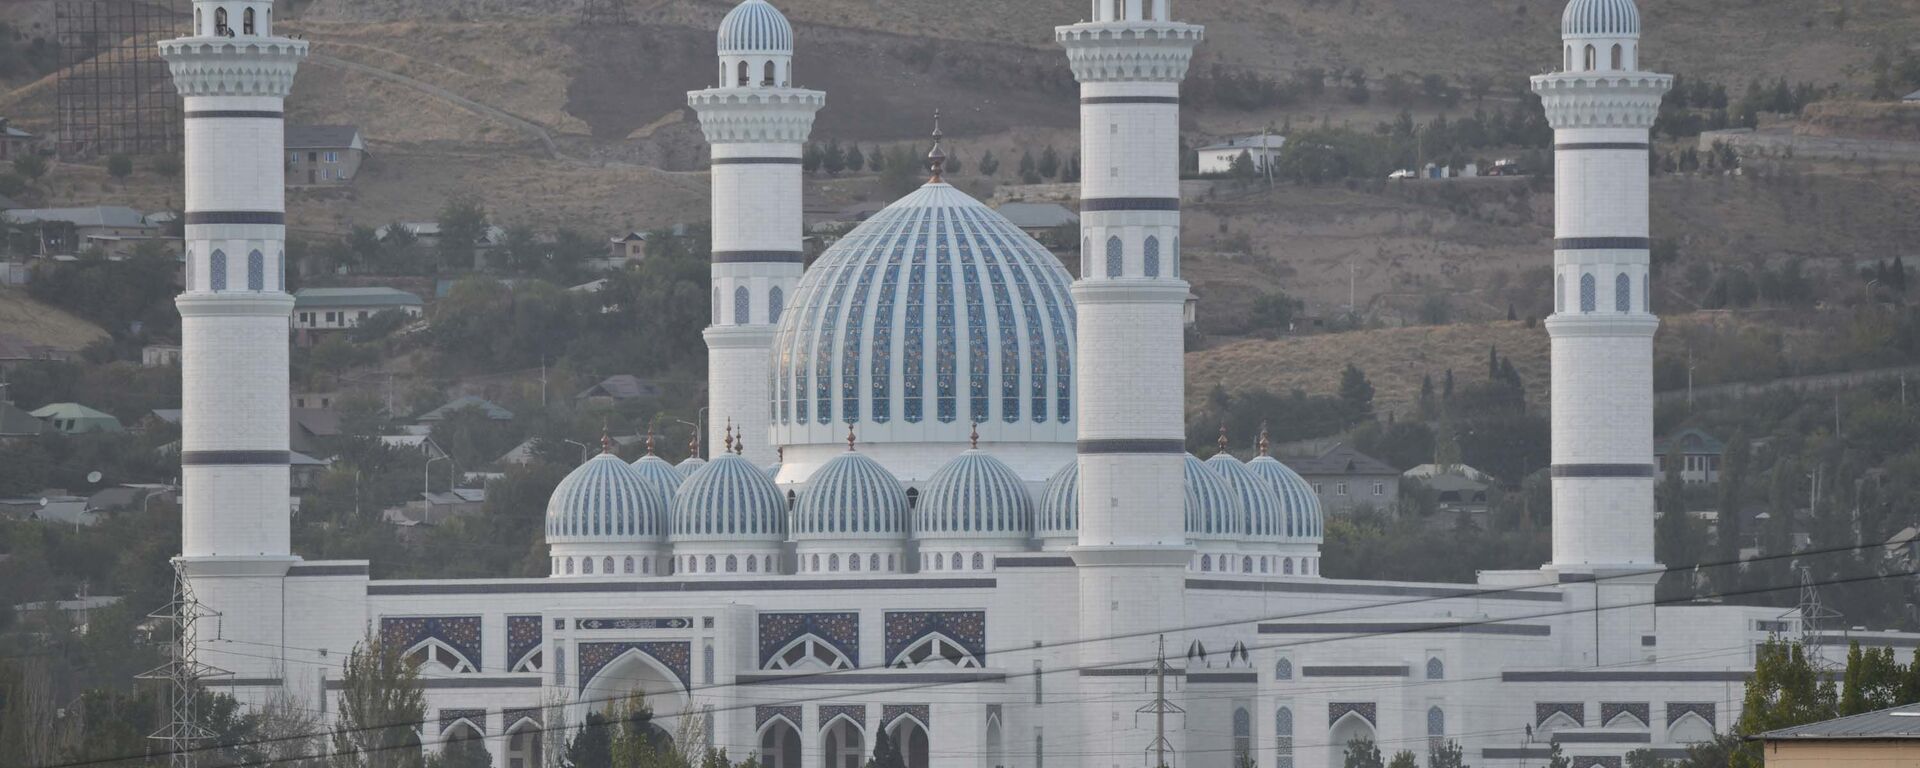 Новая мечеть в Душанбе - Sputnik Таджикистан, 1920, 22.07.2021